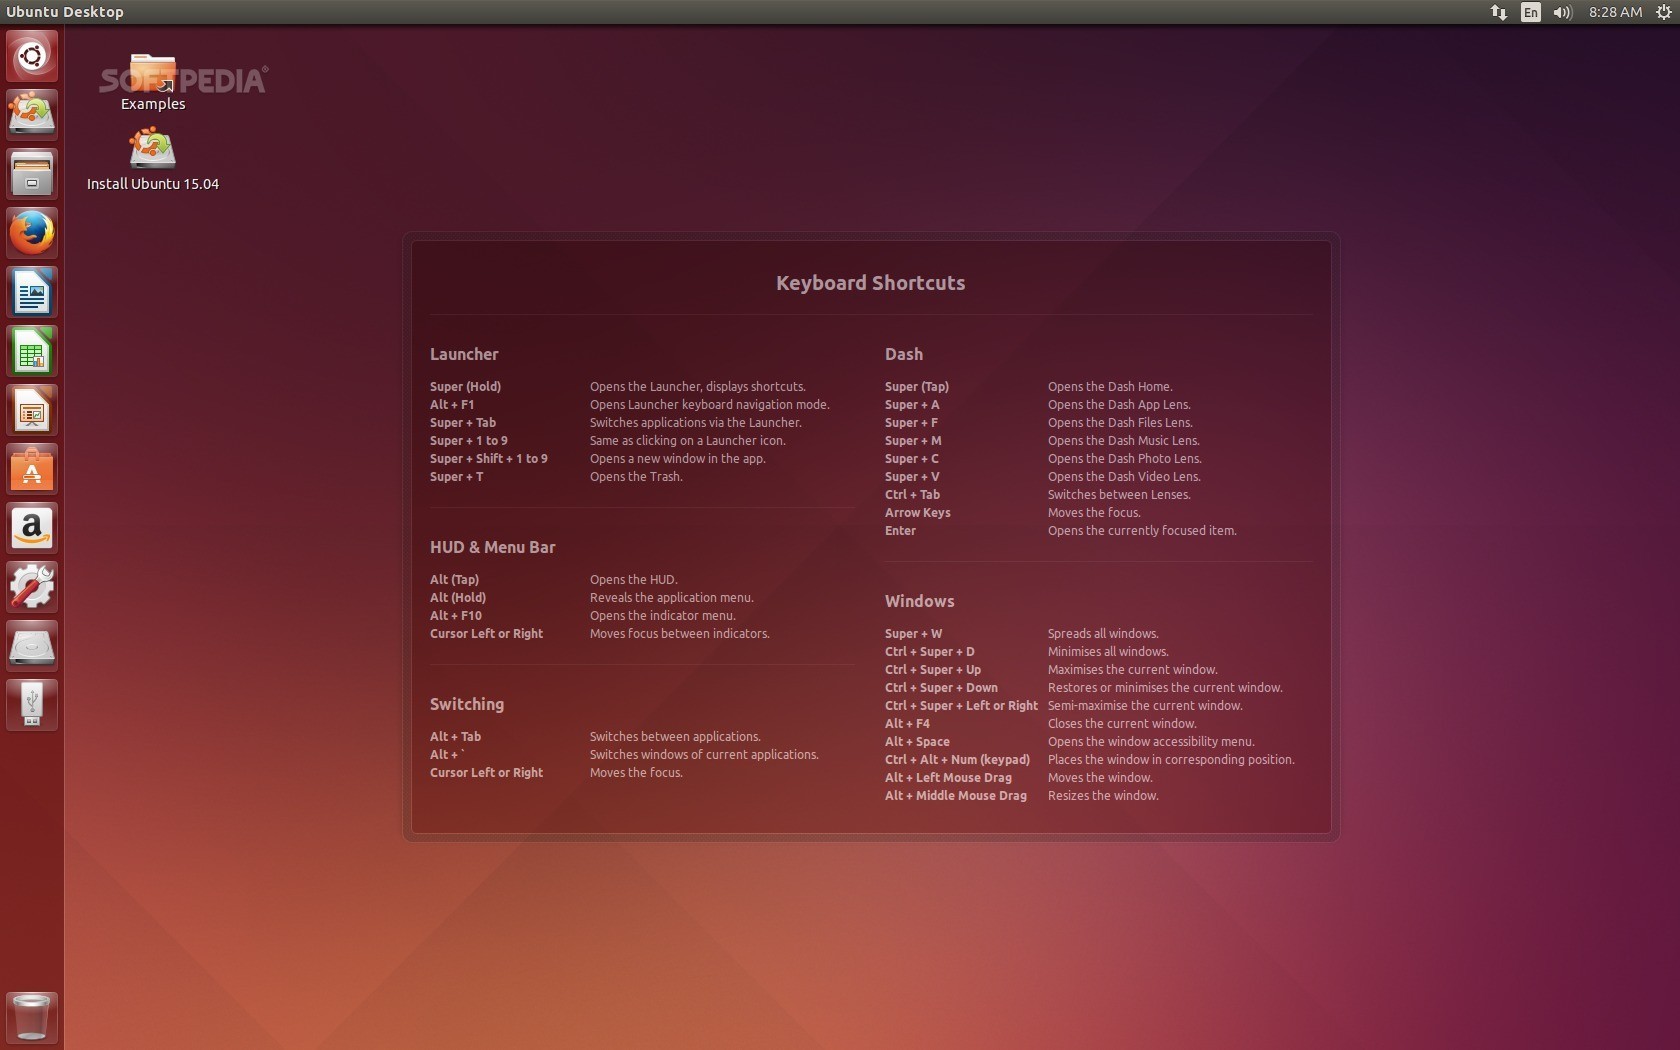 ubuntu packages